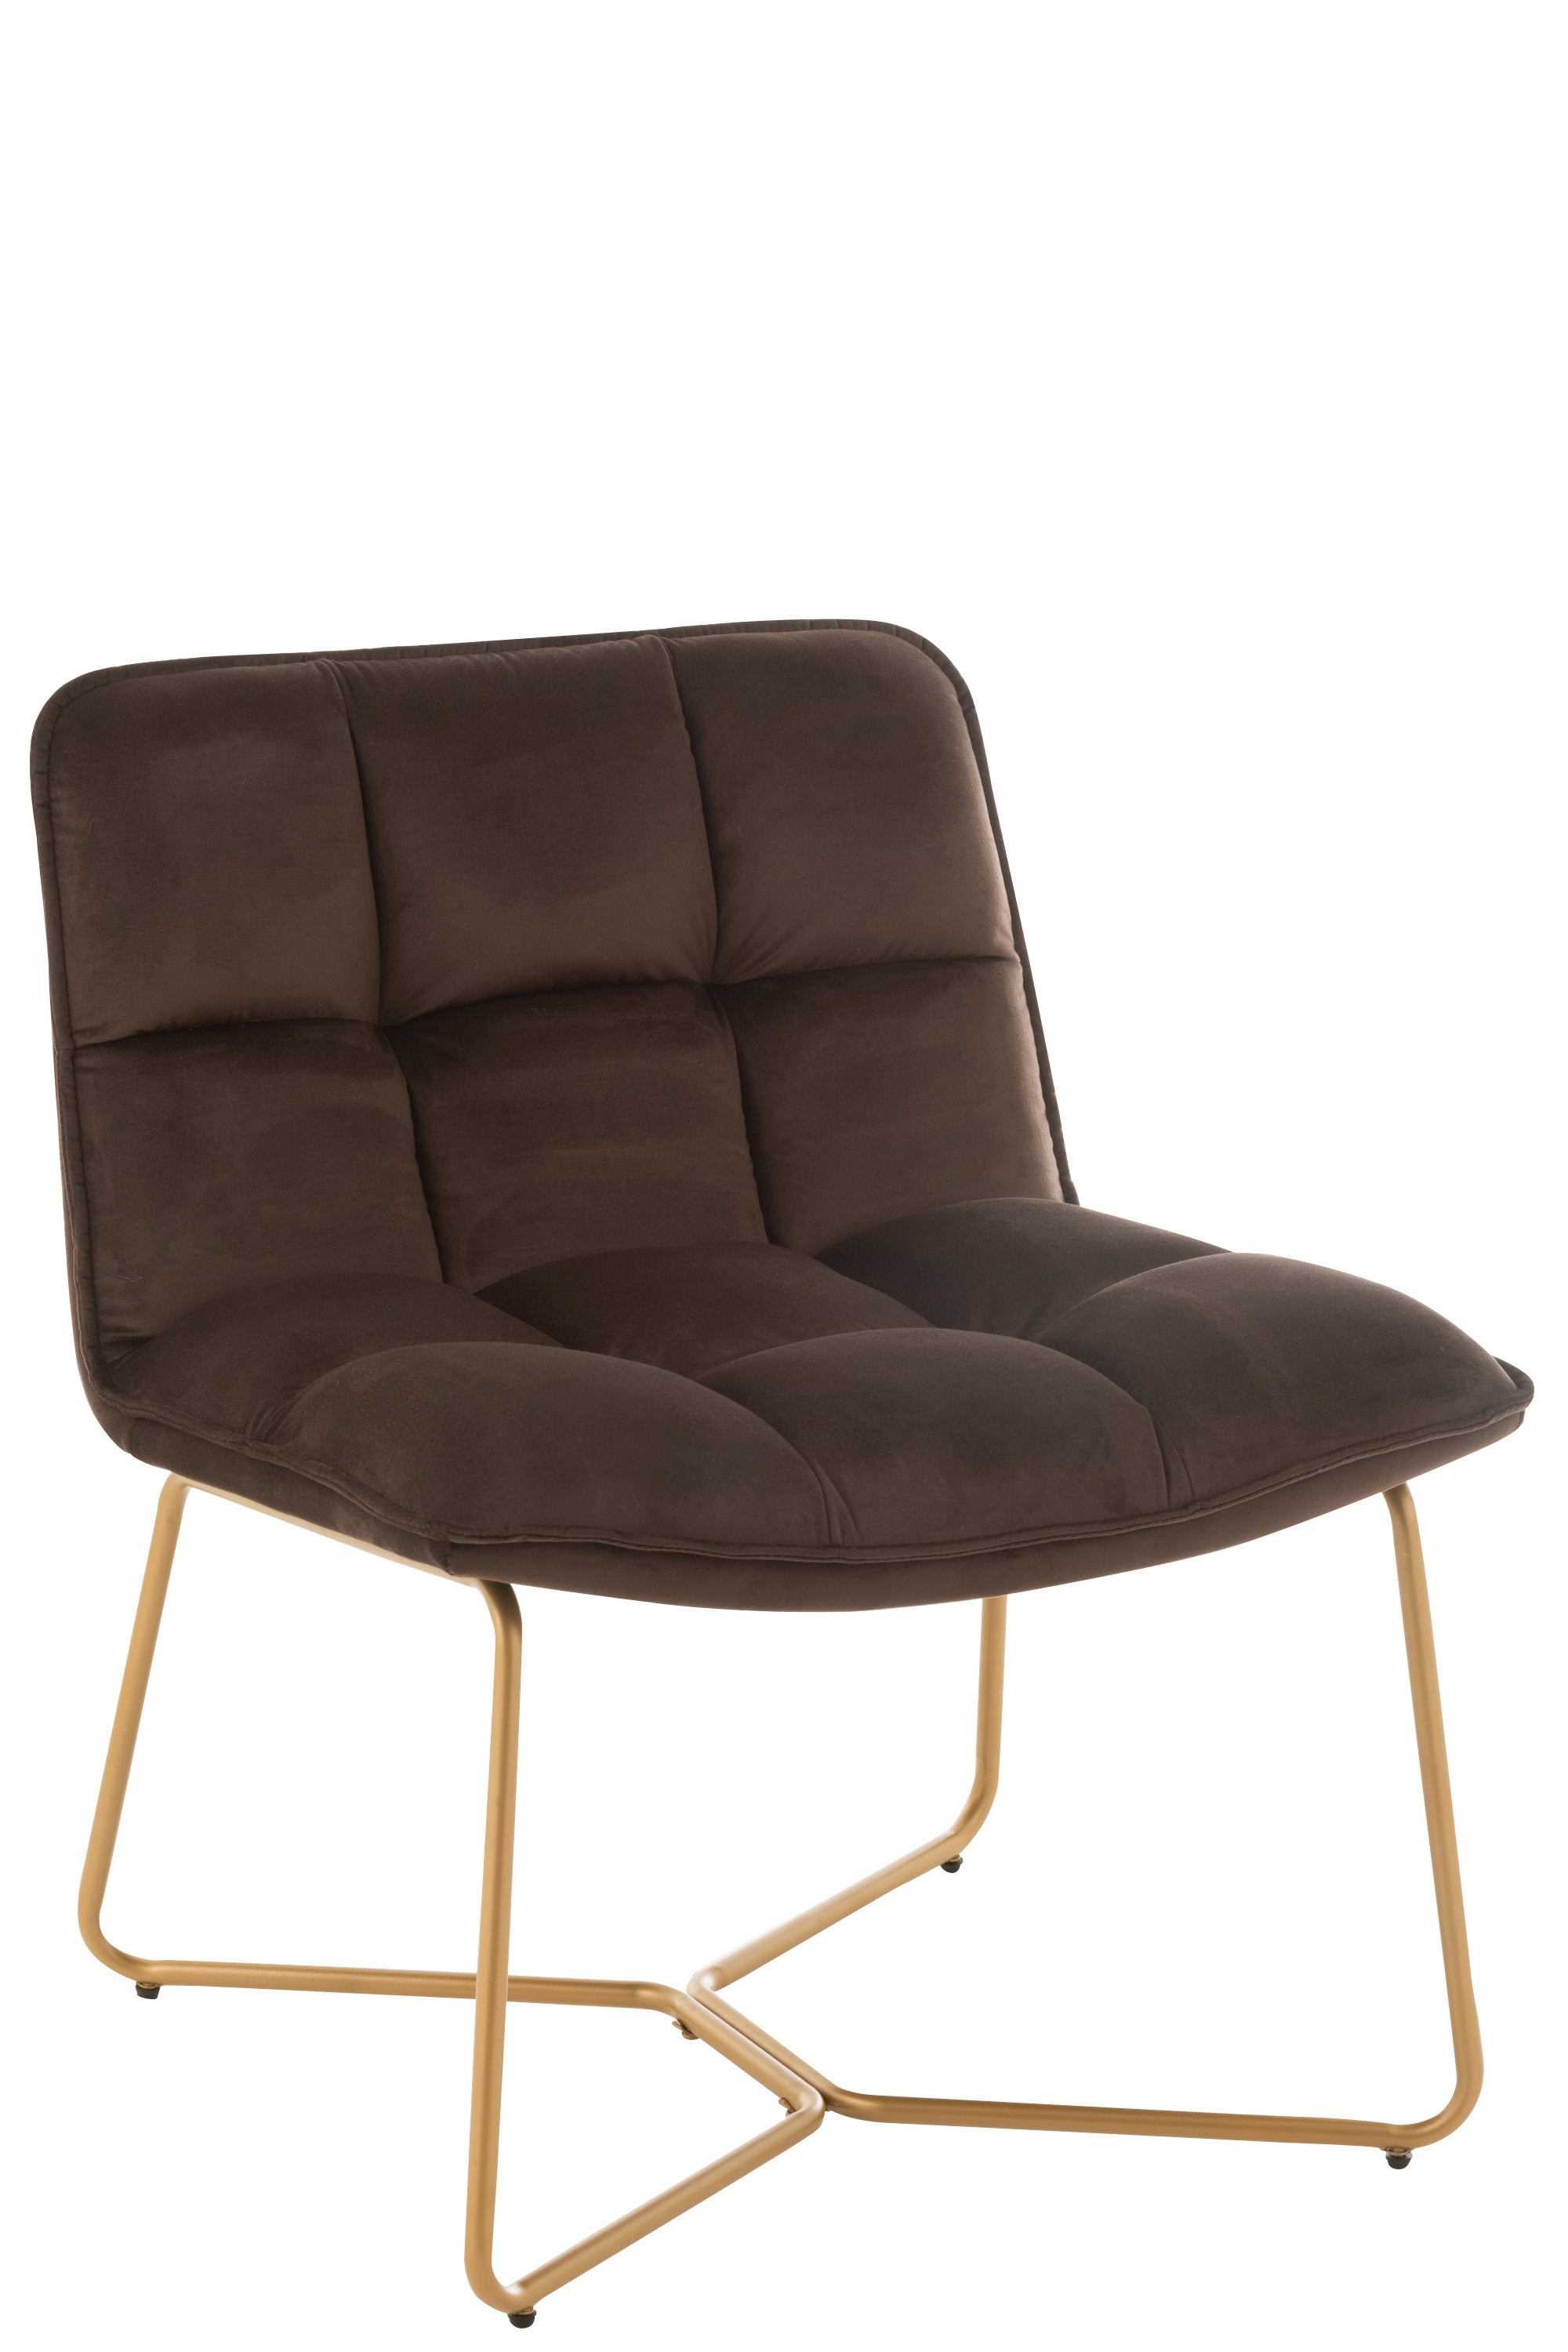 Lounge Stuhl, dick gepolstert, bezogen mit dunkelbrauner Mikrofaser in Vierecken gesteppt; lehne halbhoch; vier Beine aus goldfarbenem Metall, kufenartig nach innen gearbeitet.